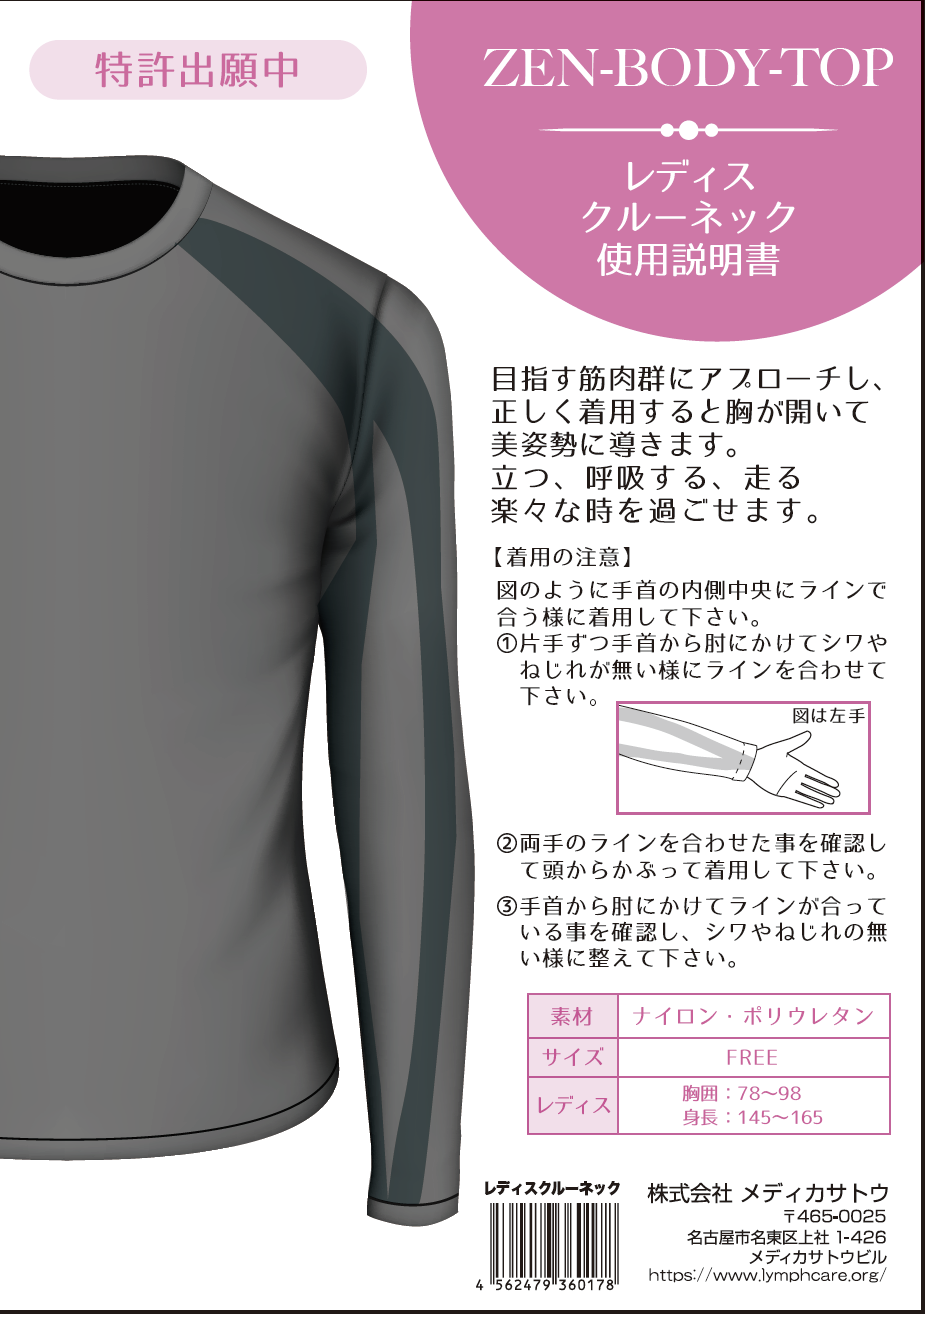 【会員様用】ZEN-BODY-TOP シリーズ フレクサーシャツ